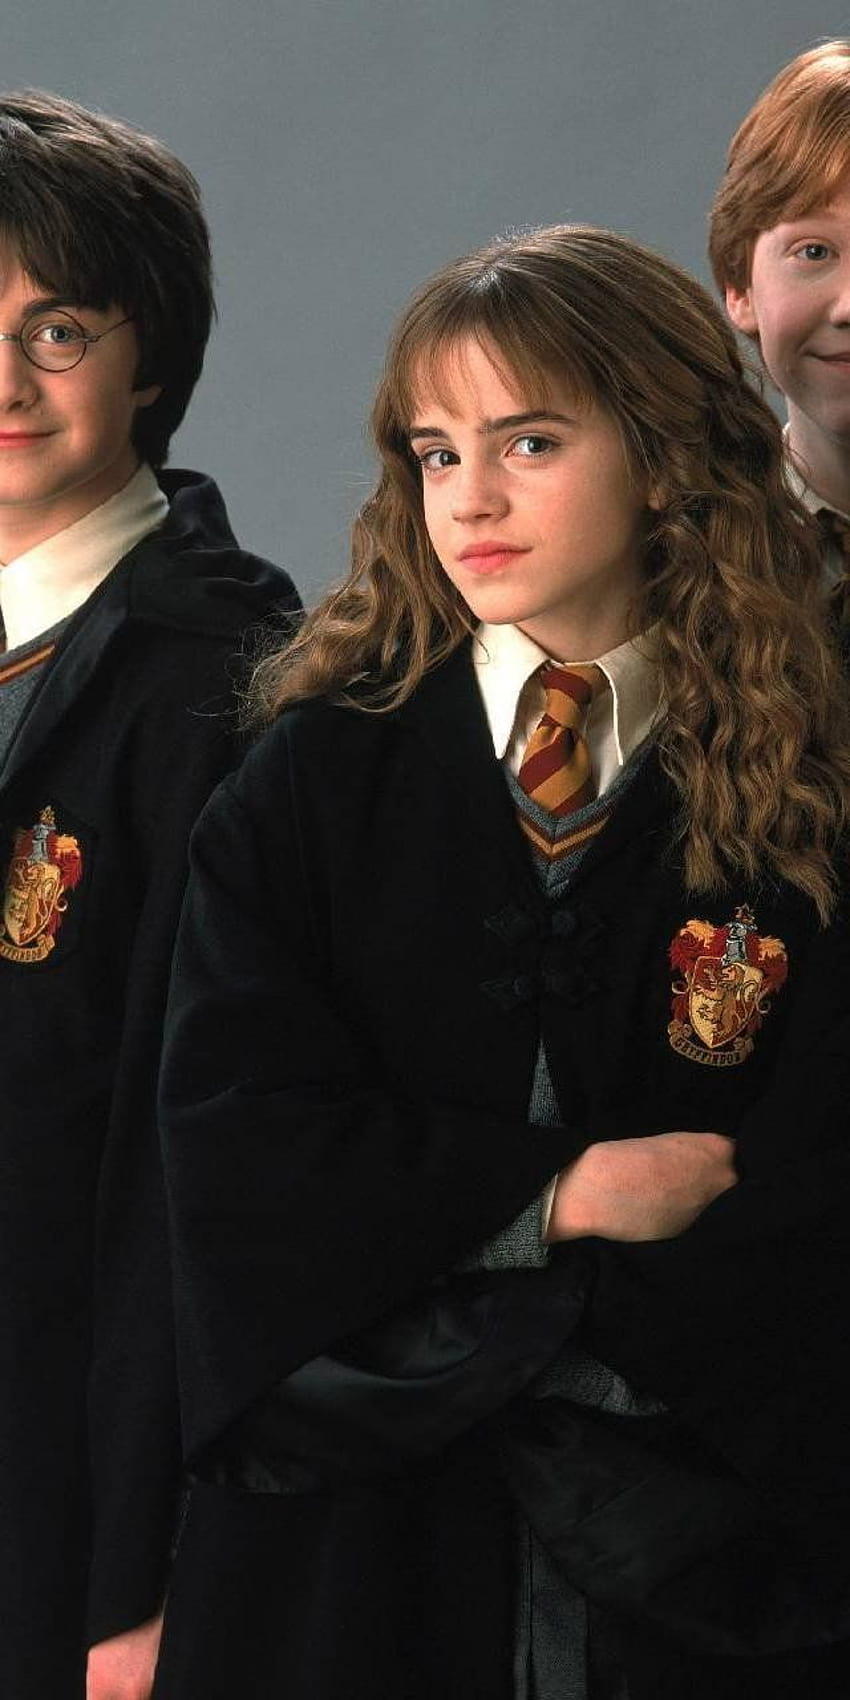 Wallpaper  Harry Potter Hermione Granger Emma Watson 3840x2400  Crss34   1699595  HD Wallpapers  WallHere